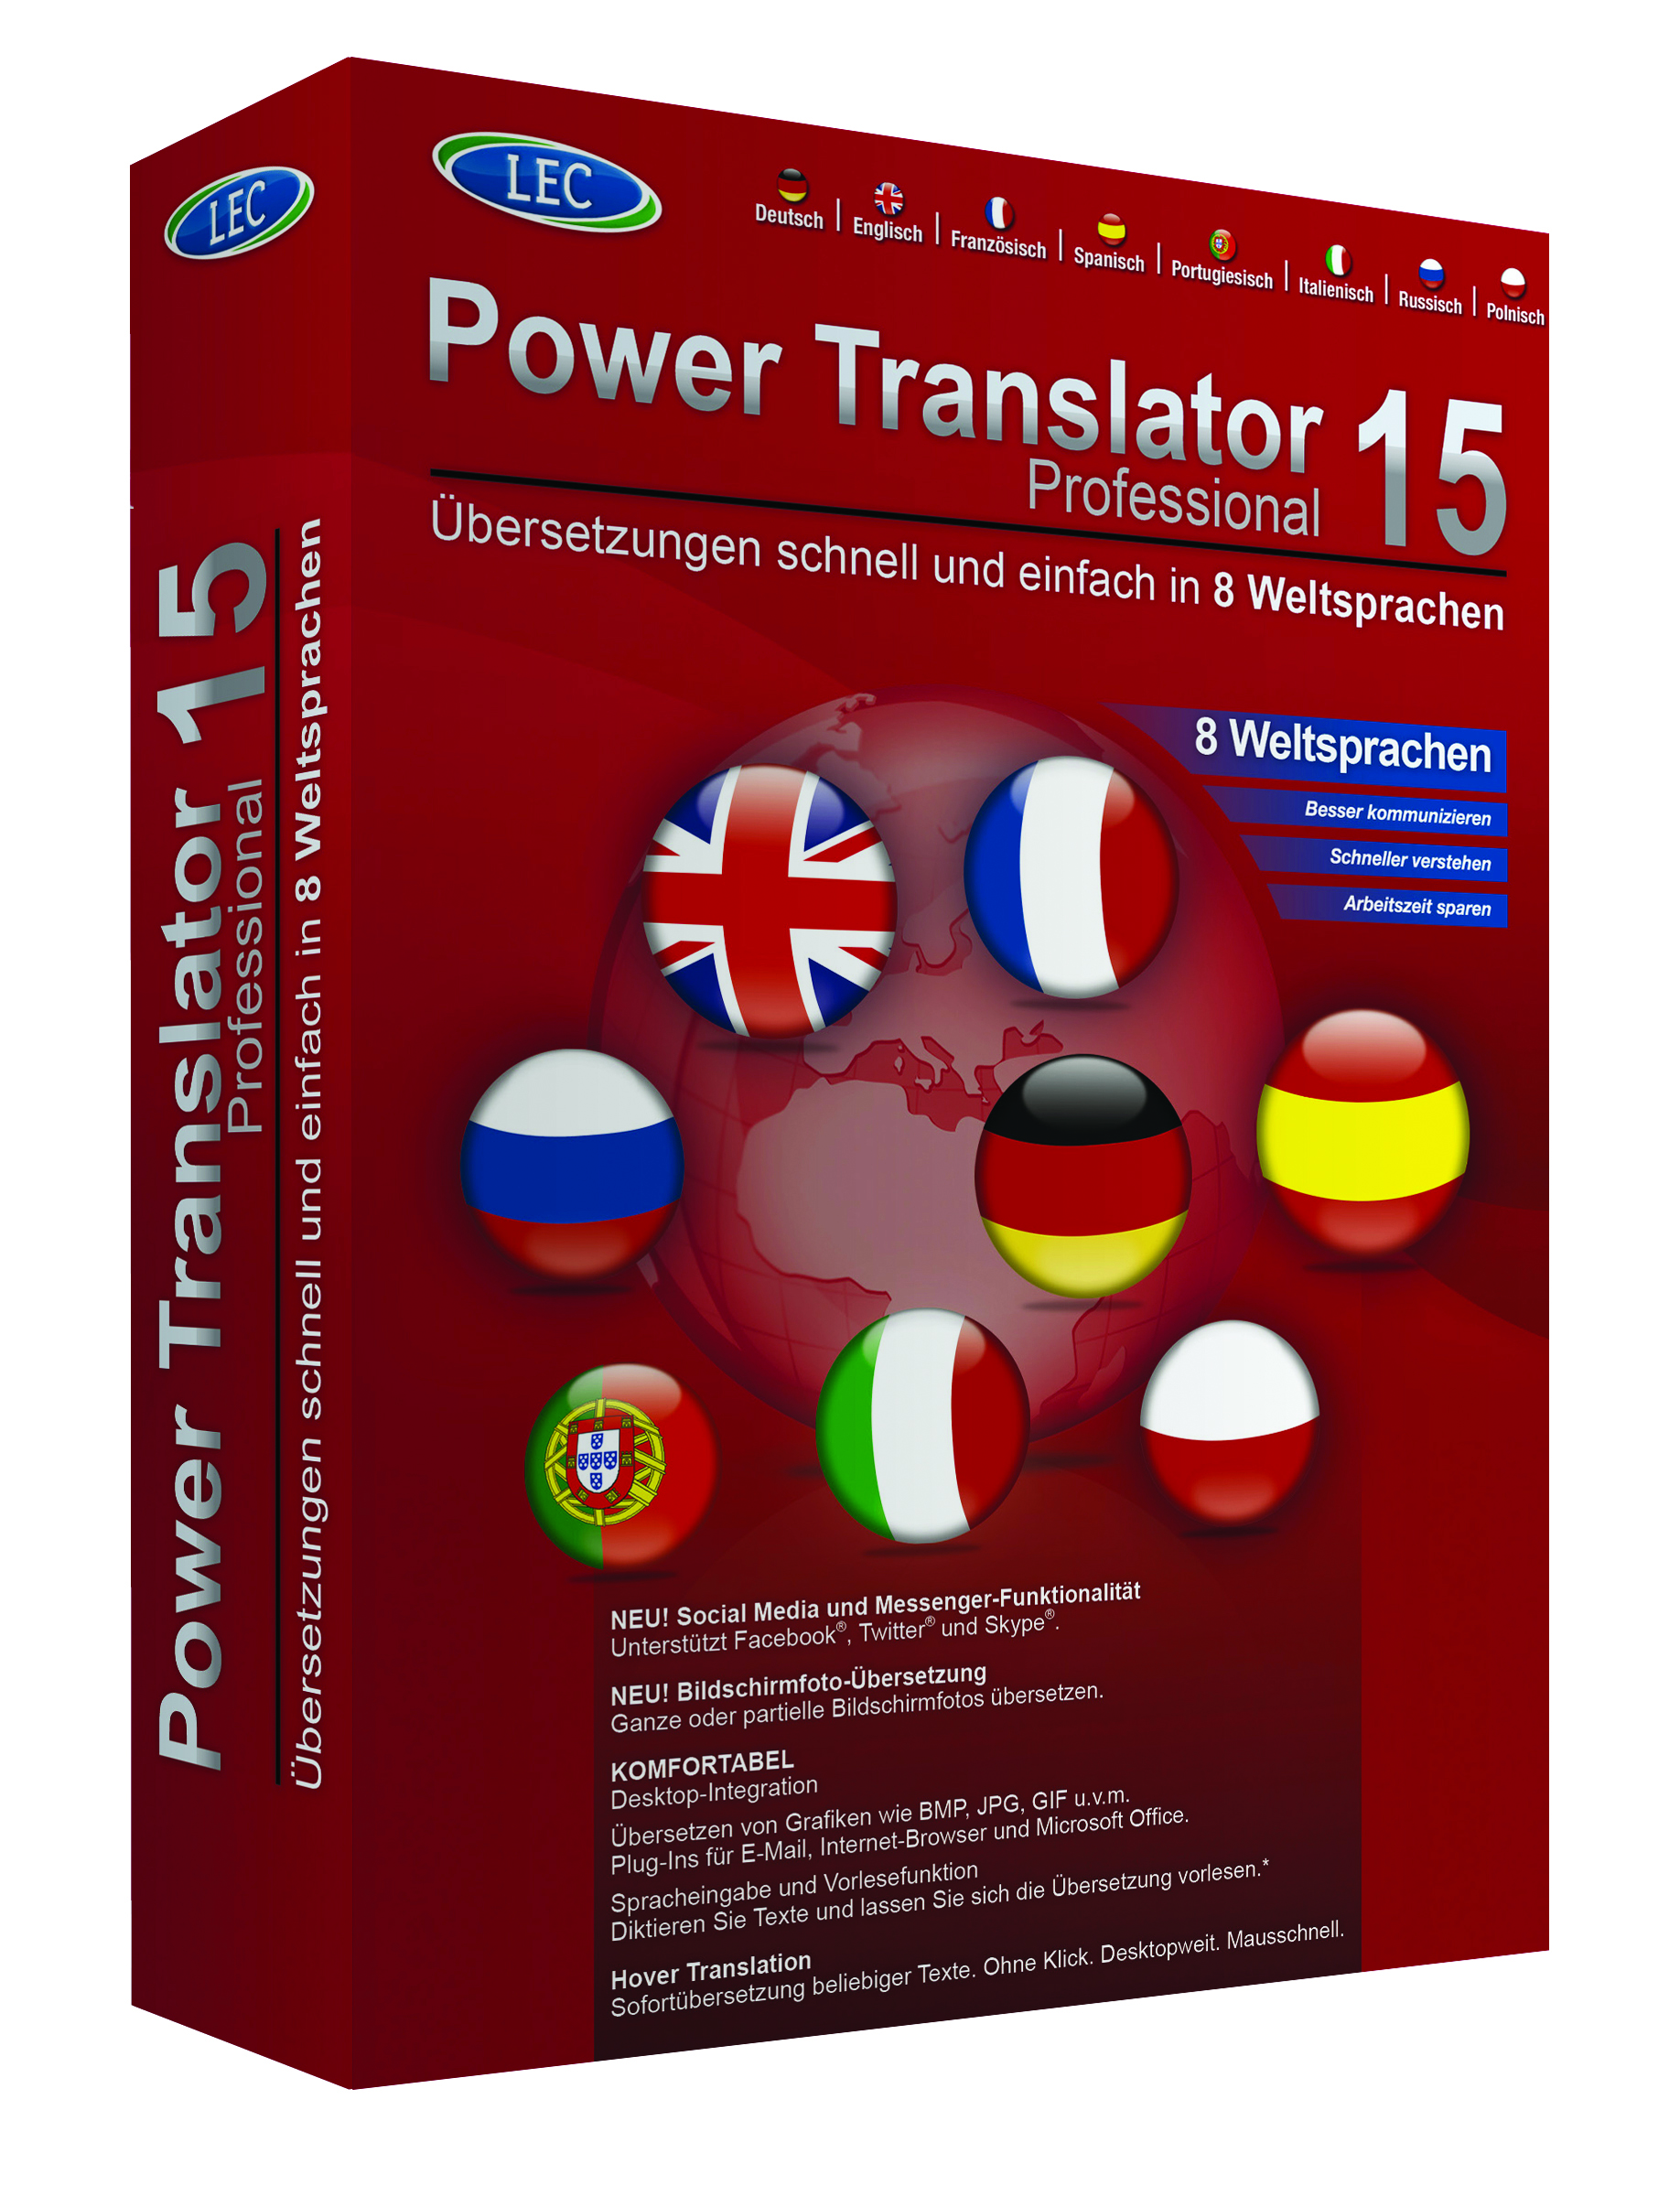 PowerTranslator15 pro 3D links 300dpi CMYK